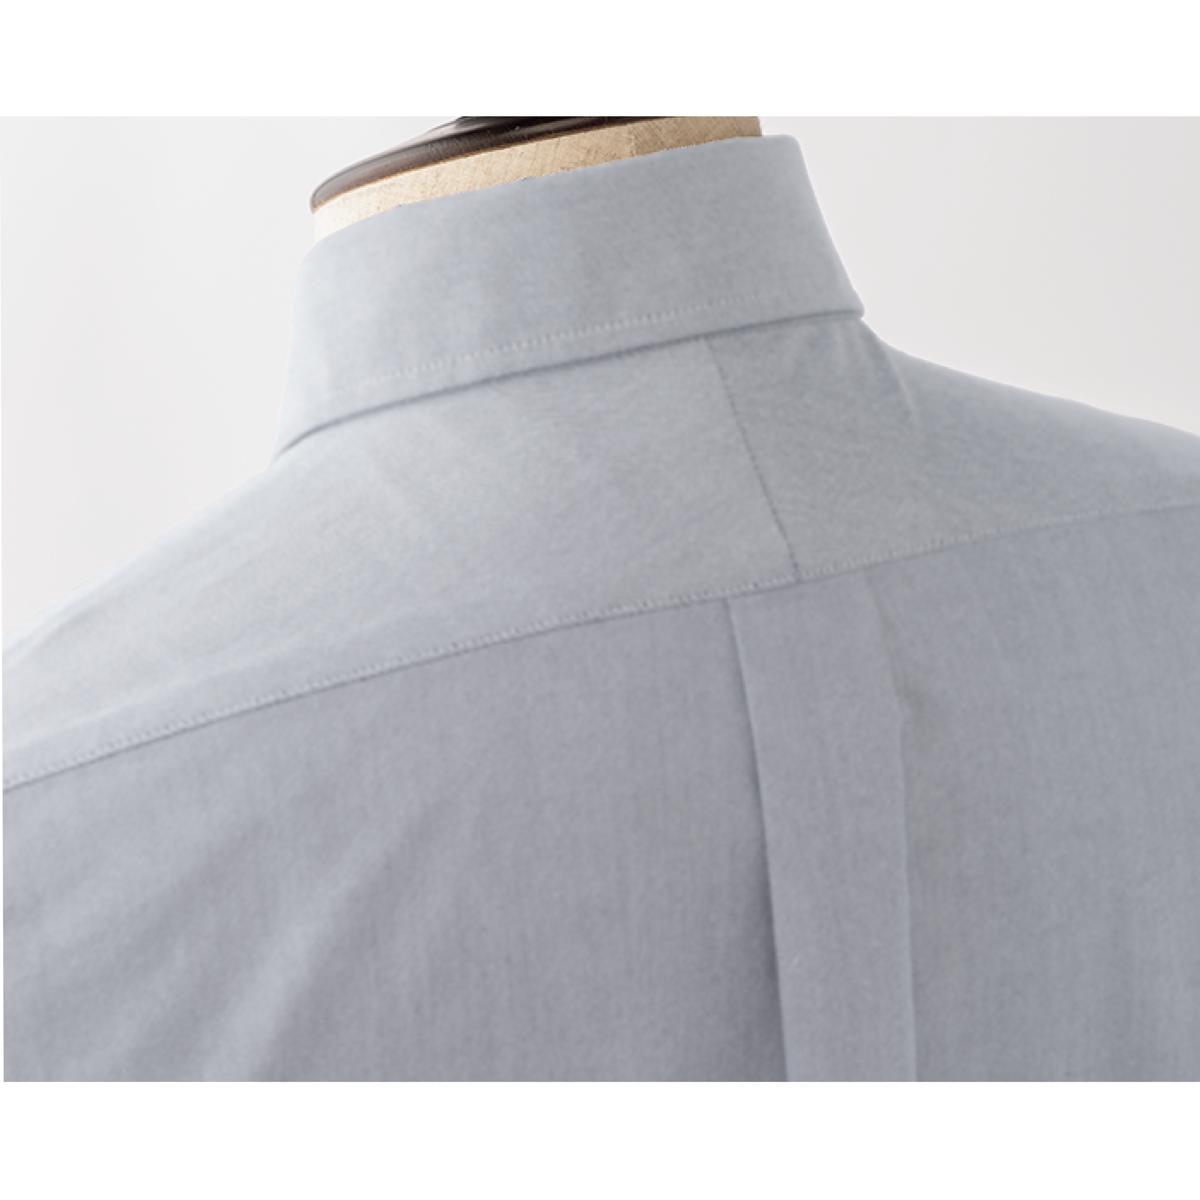 上質仕立てのオックスフォードシャツ(半袖)オーガニックコットンを100%使用 ファッション通販ならセシール(cecile)